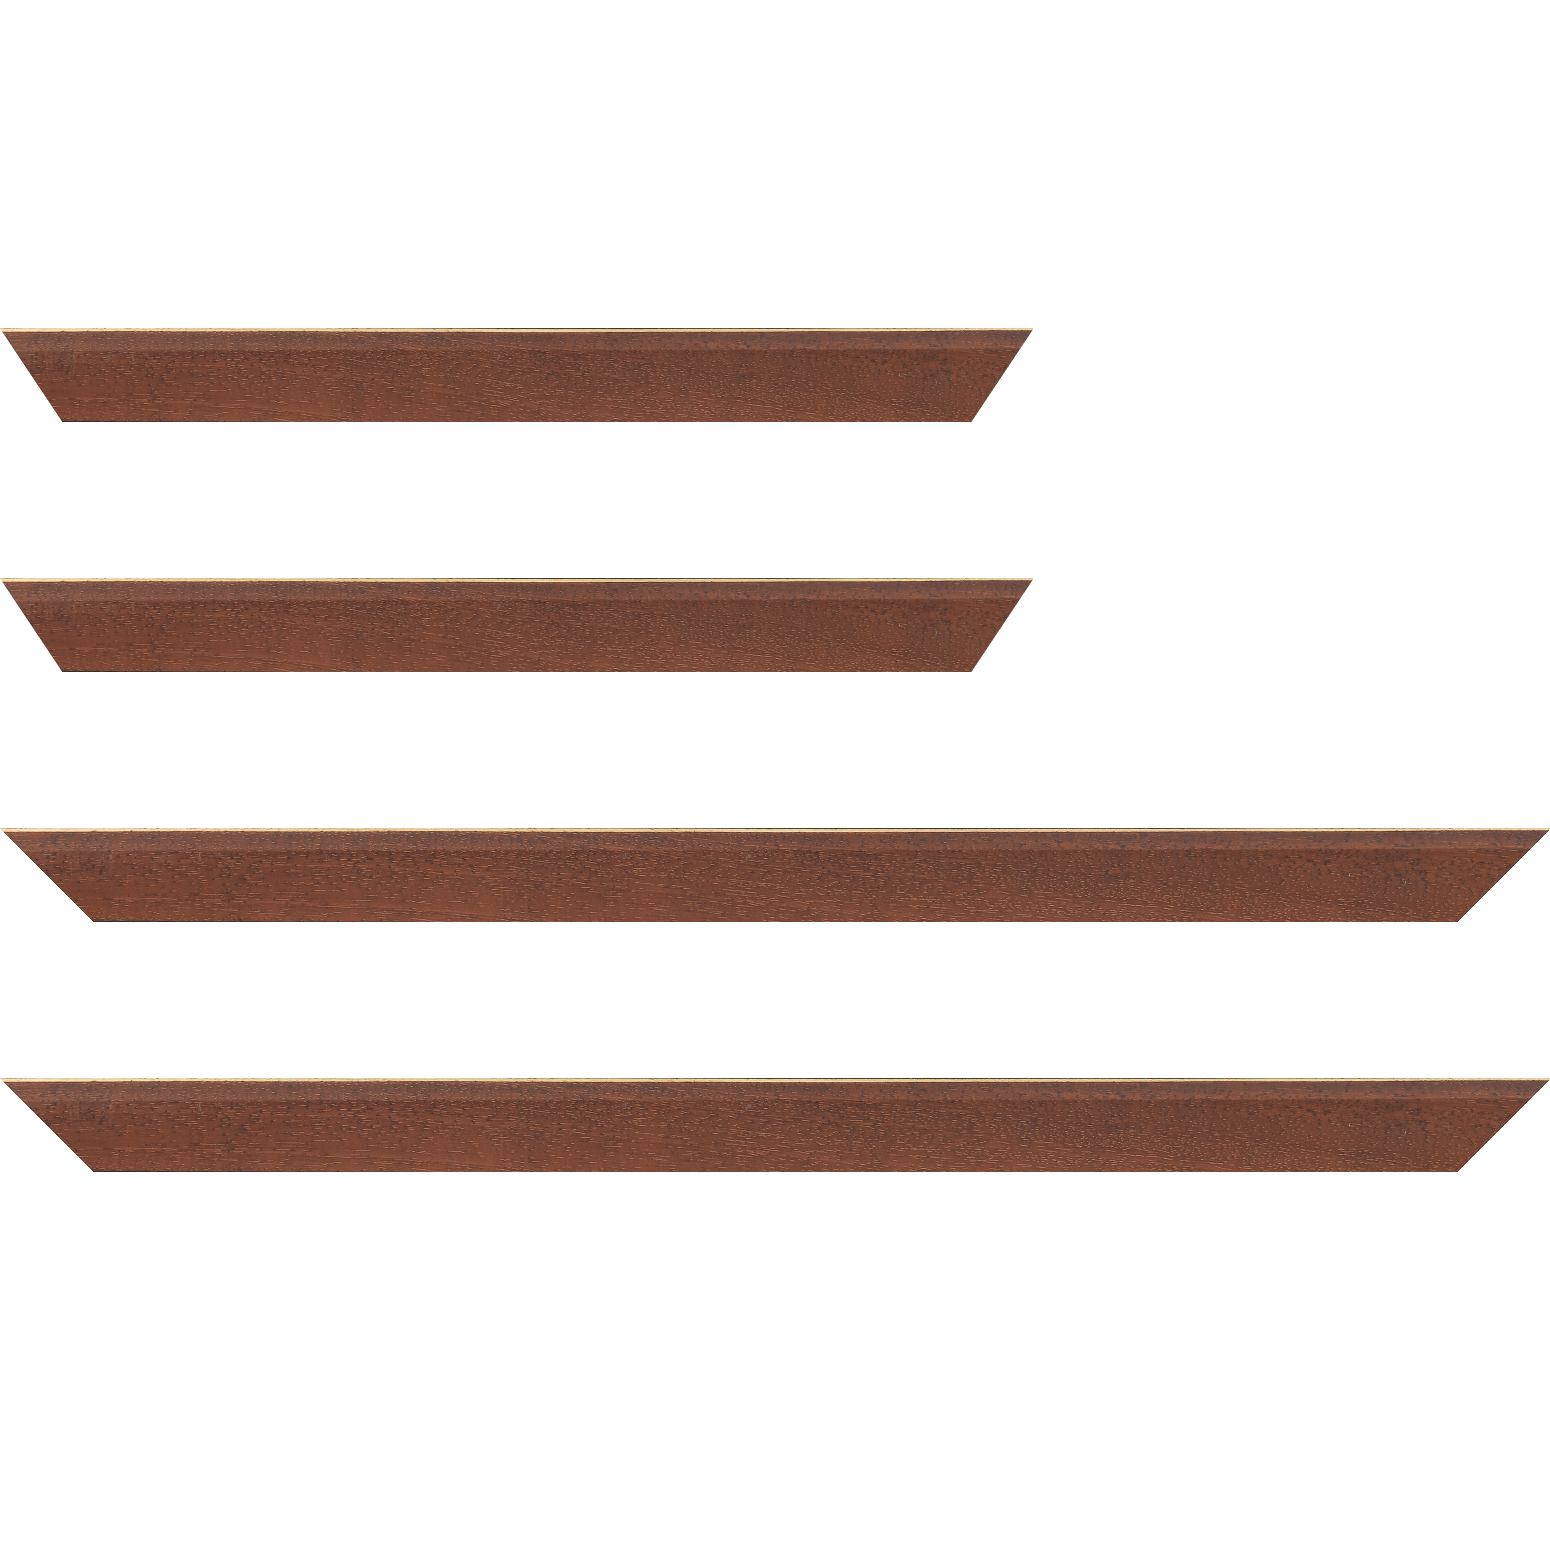 Baguette bois profil plat escalier largeur 3cm couleur marron miel satiné filet créme extérieur - 18x24